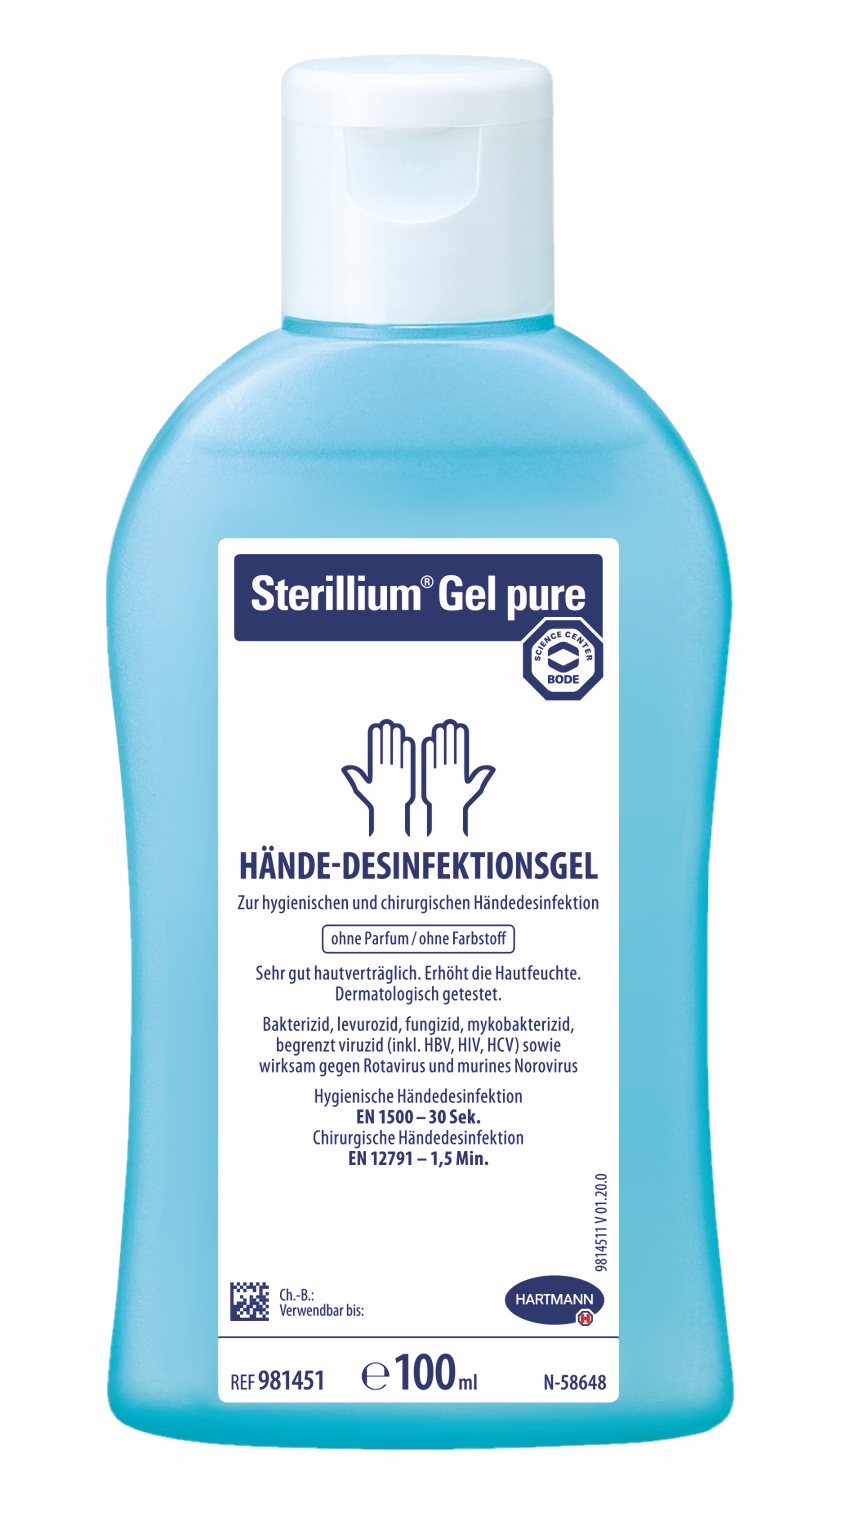 Bode Sterillium Gel pure Hände-Desinfektionsgel